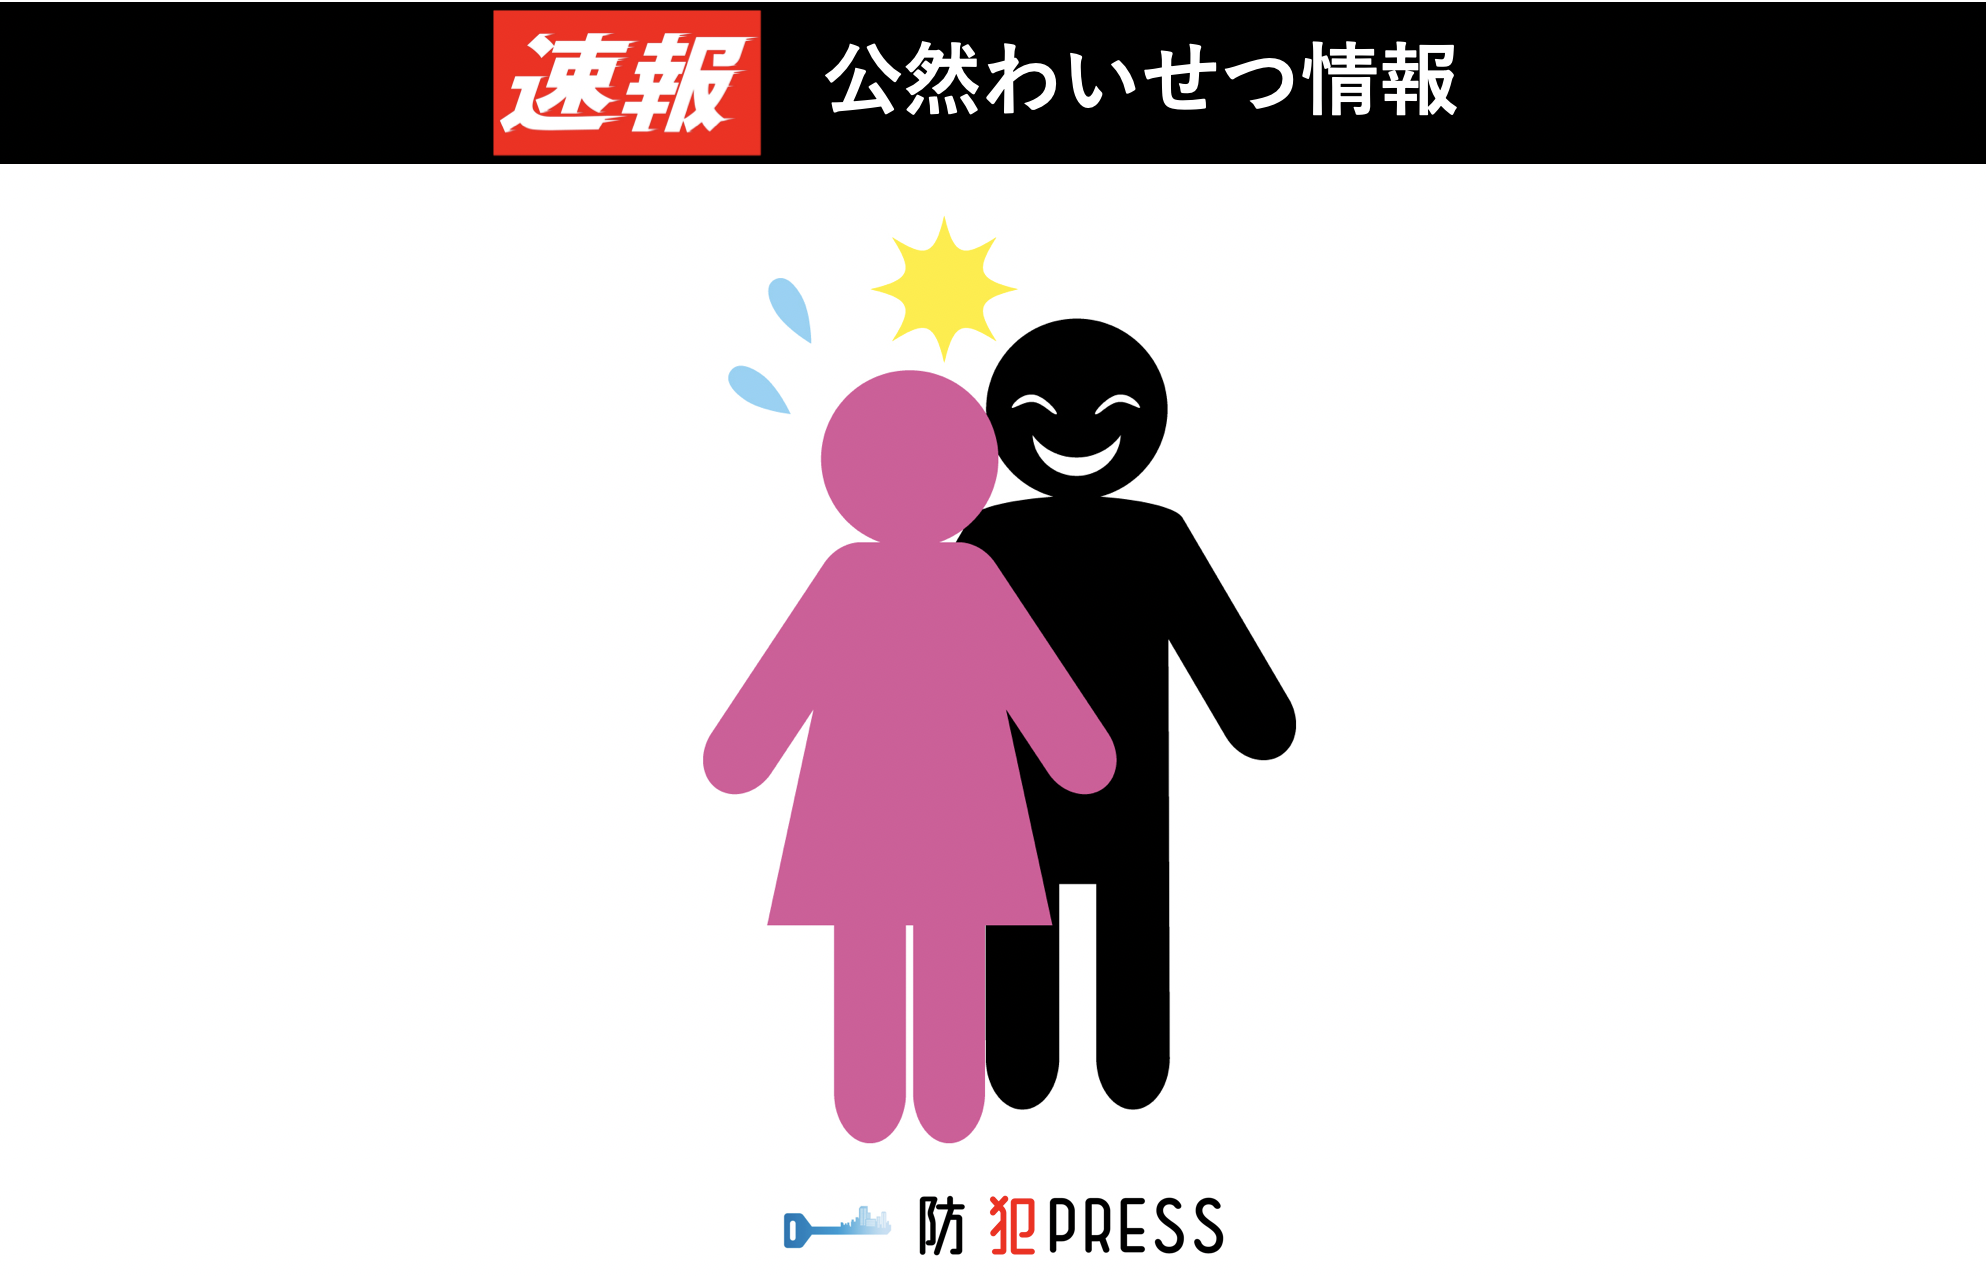 十和田市で女性対象の公然わいせつ容疑事案の発生